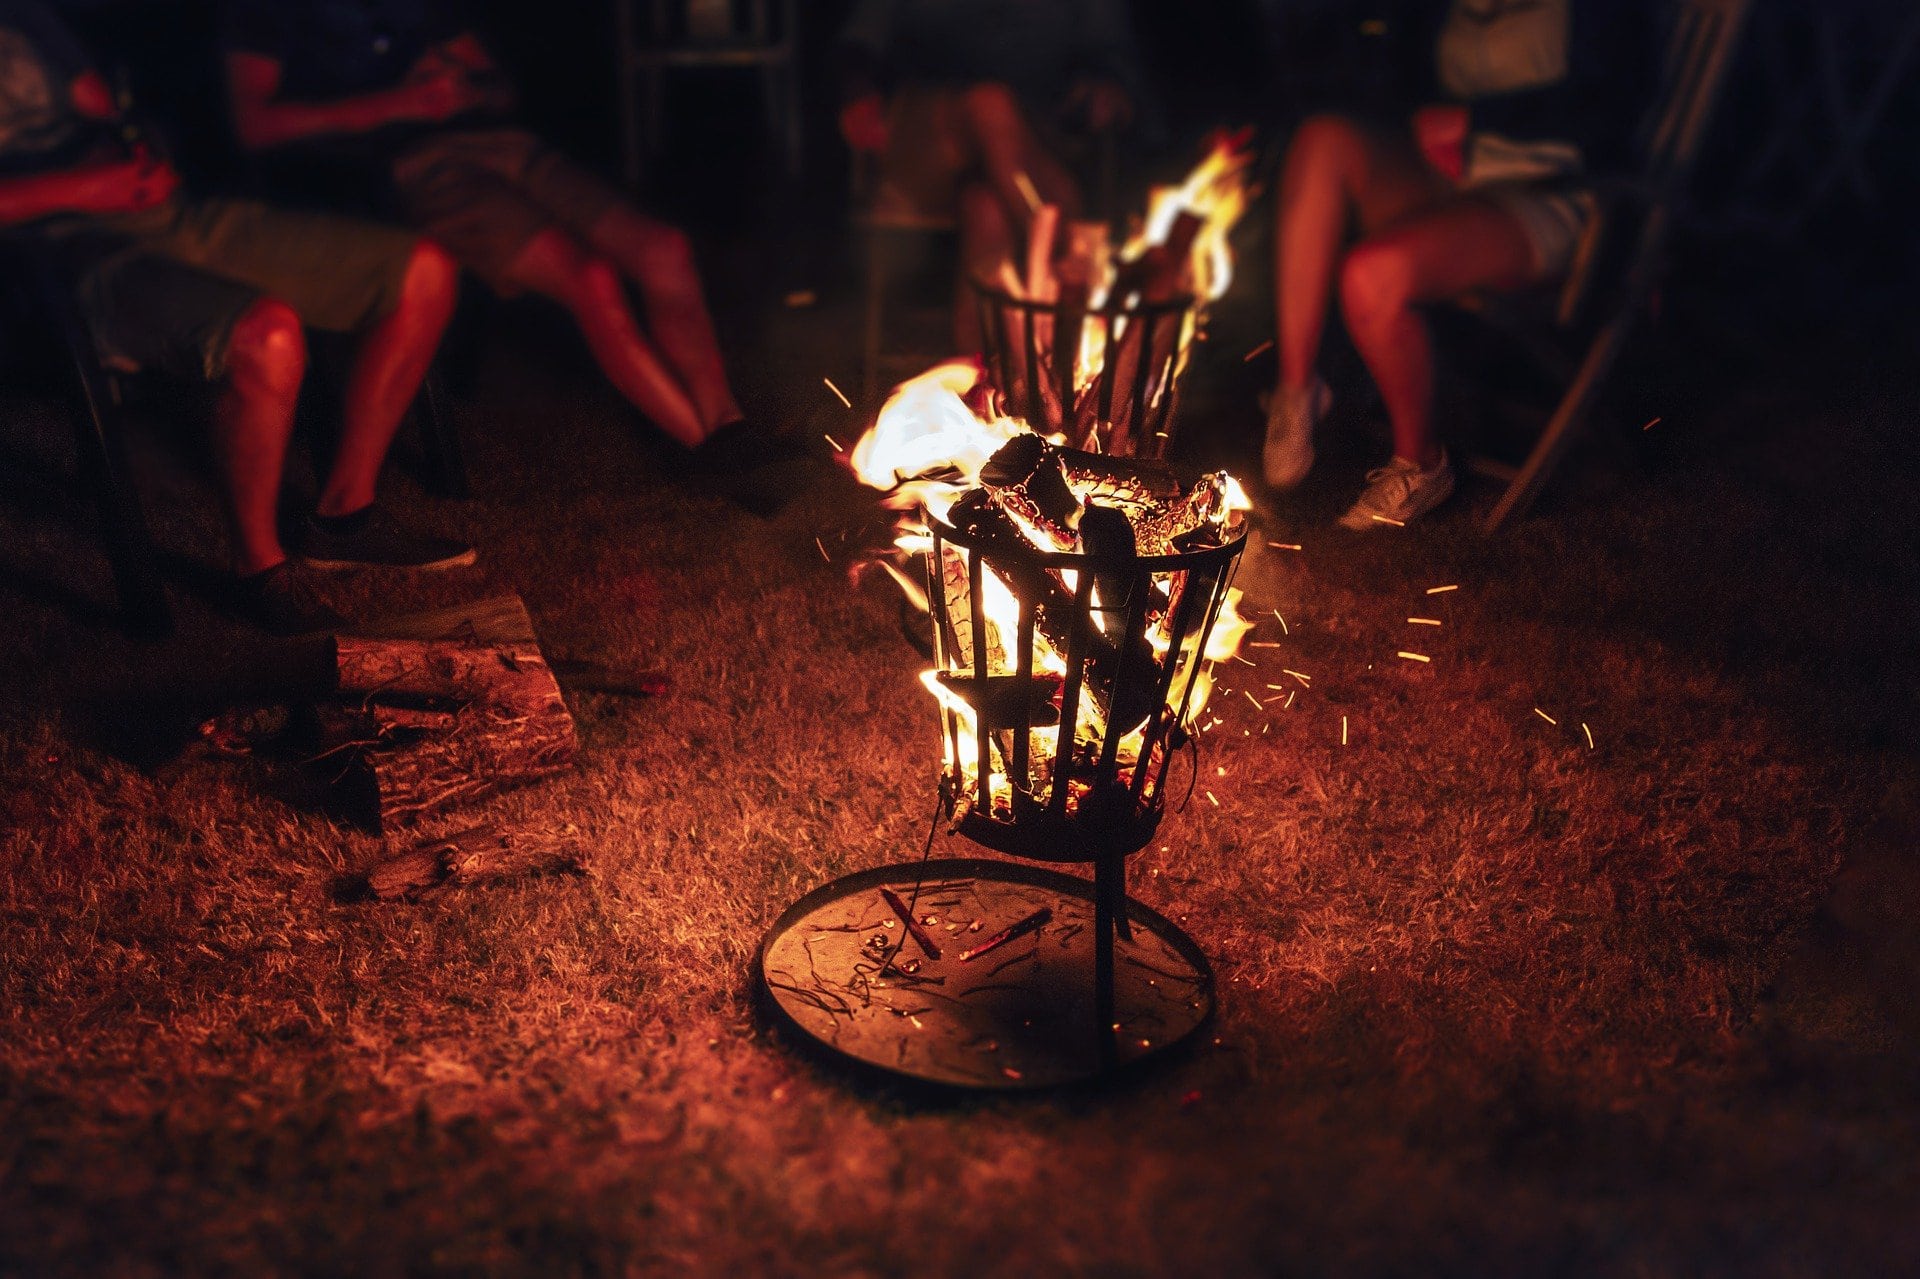 Ein gemeinsames Lagerfeuer kann zu einer wunderschönen Geschenkidee und Begegnungsmöglichkeit für gute Freunde und Freundeskreise werden.